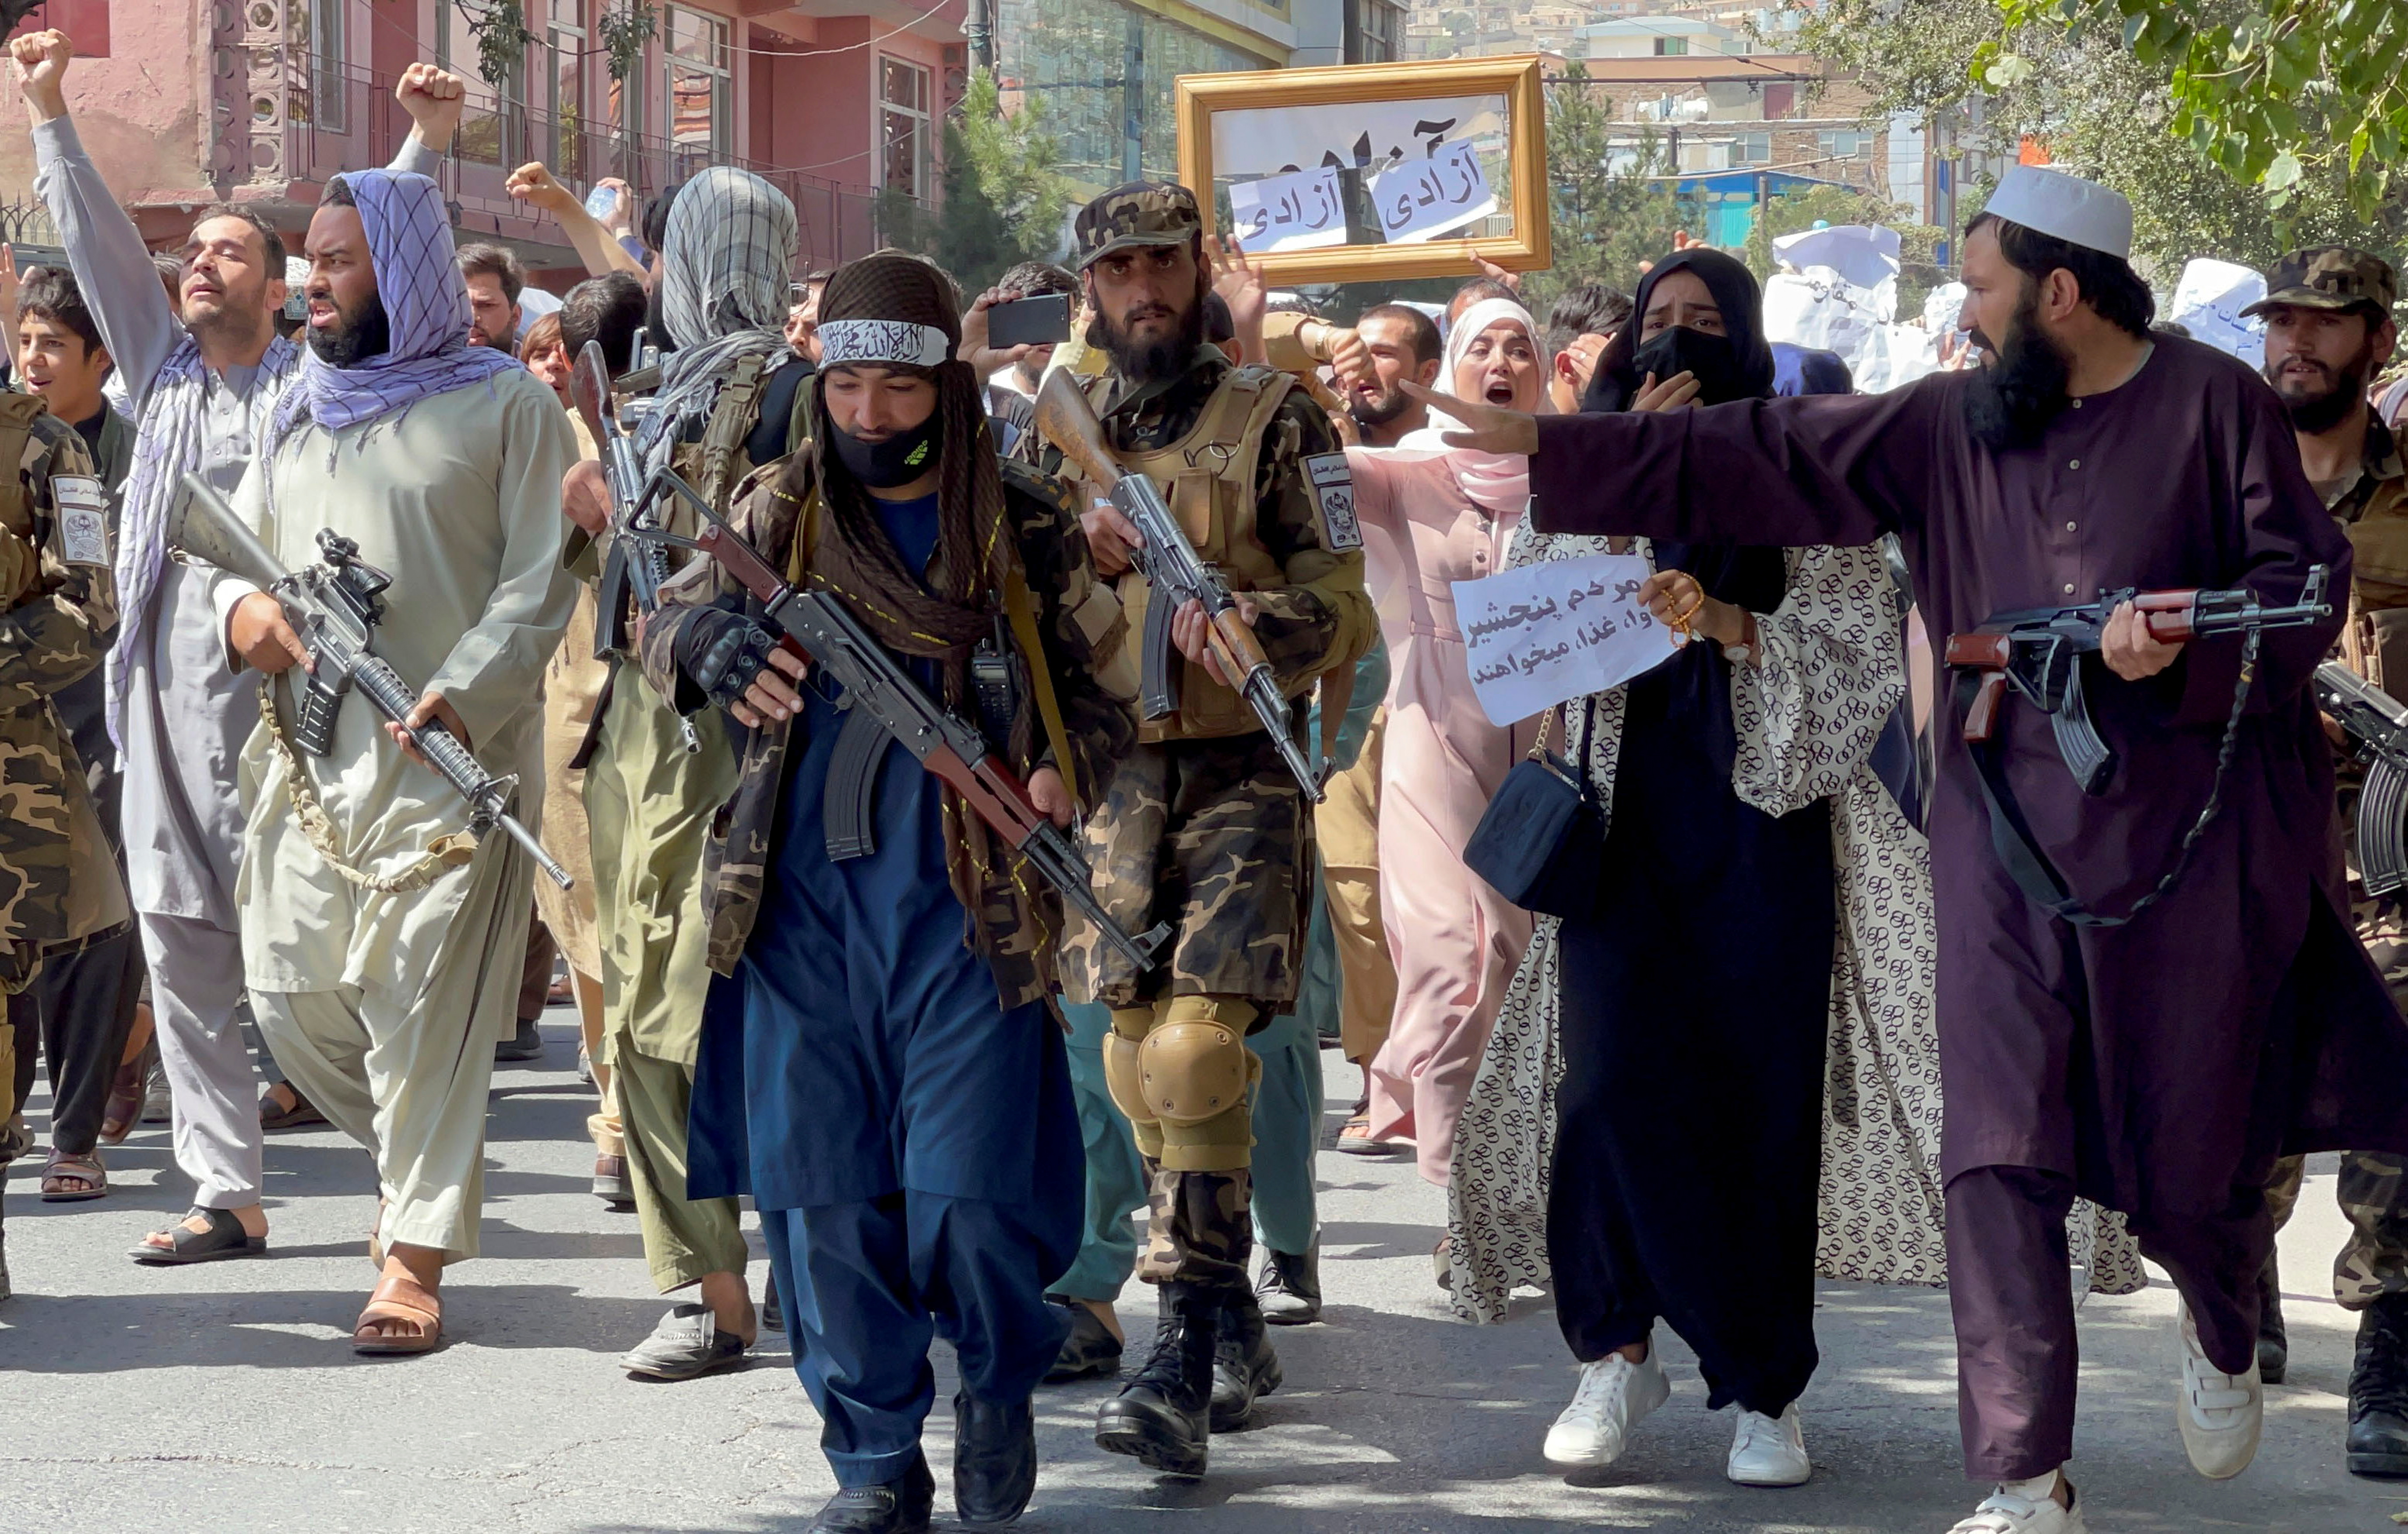 Fuerzas talibanes caminan frente a manifestantes durante una marcha cerca de la embajada de Pakistán. Fuente: REUTERS/Stringer